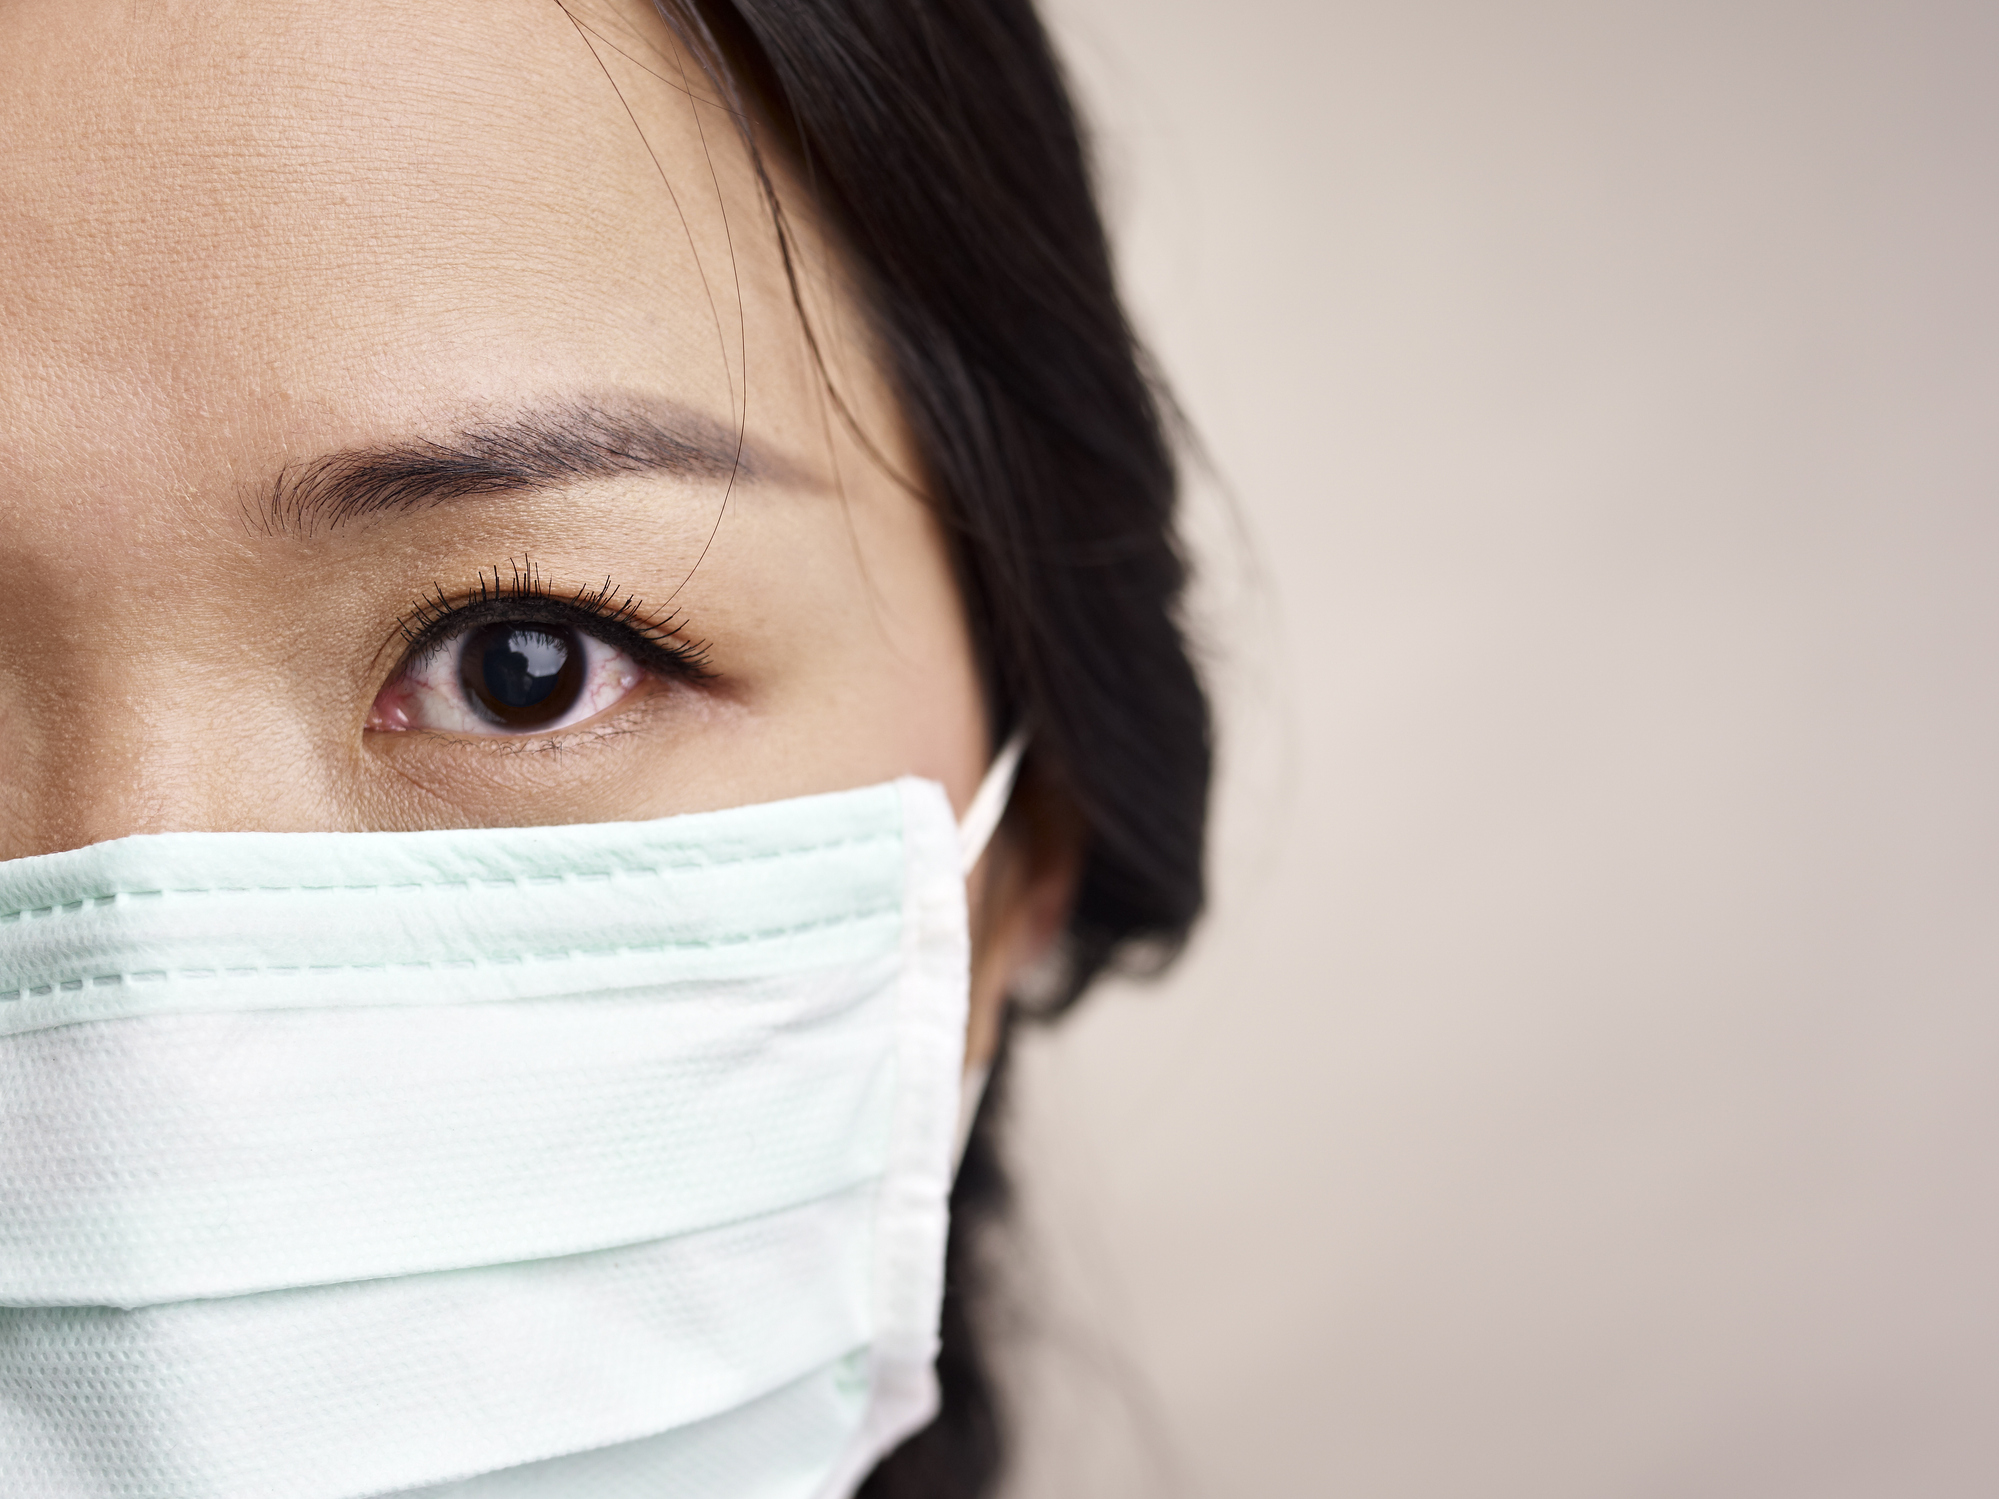 Μυστηριώδης πνευμονία στην Κίνα εγείρει φόβους για πανδημία – Τι πρέπει να ξέρετε